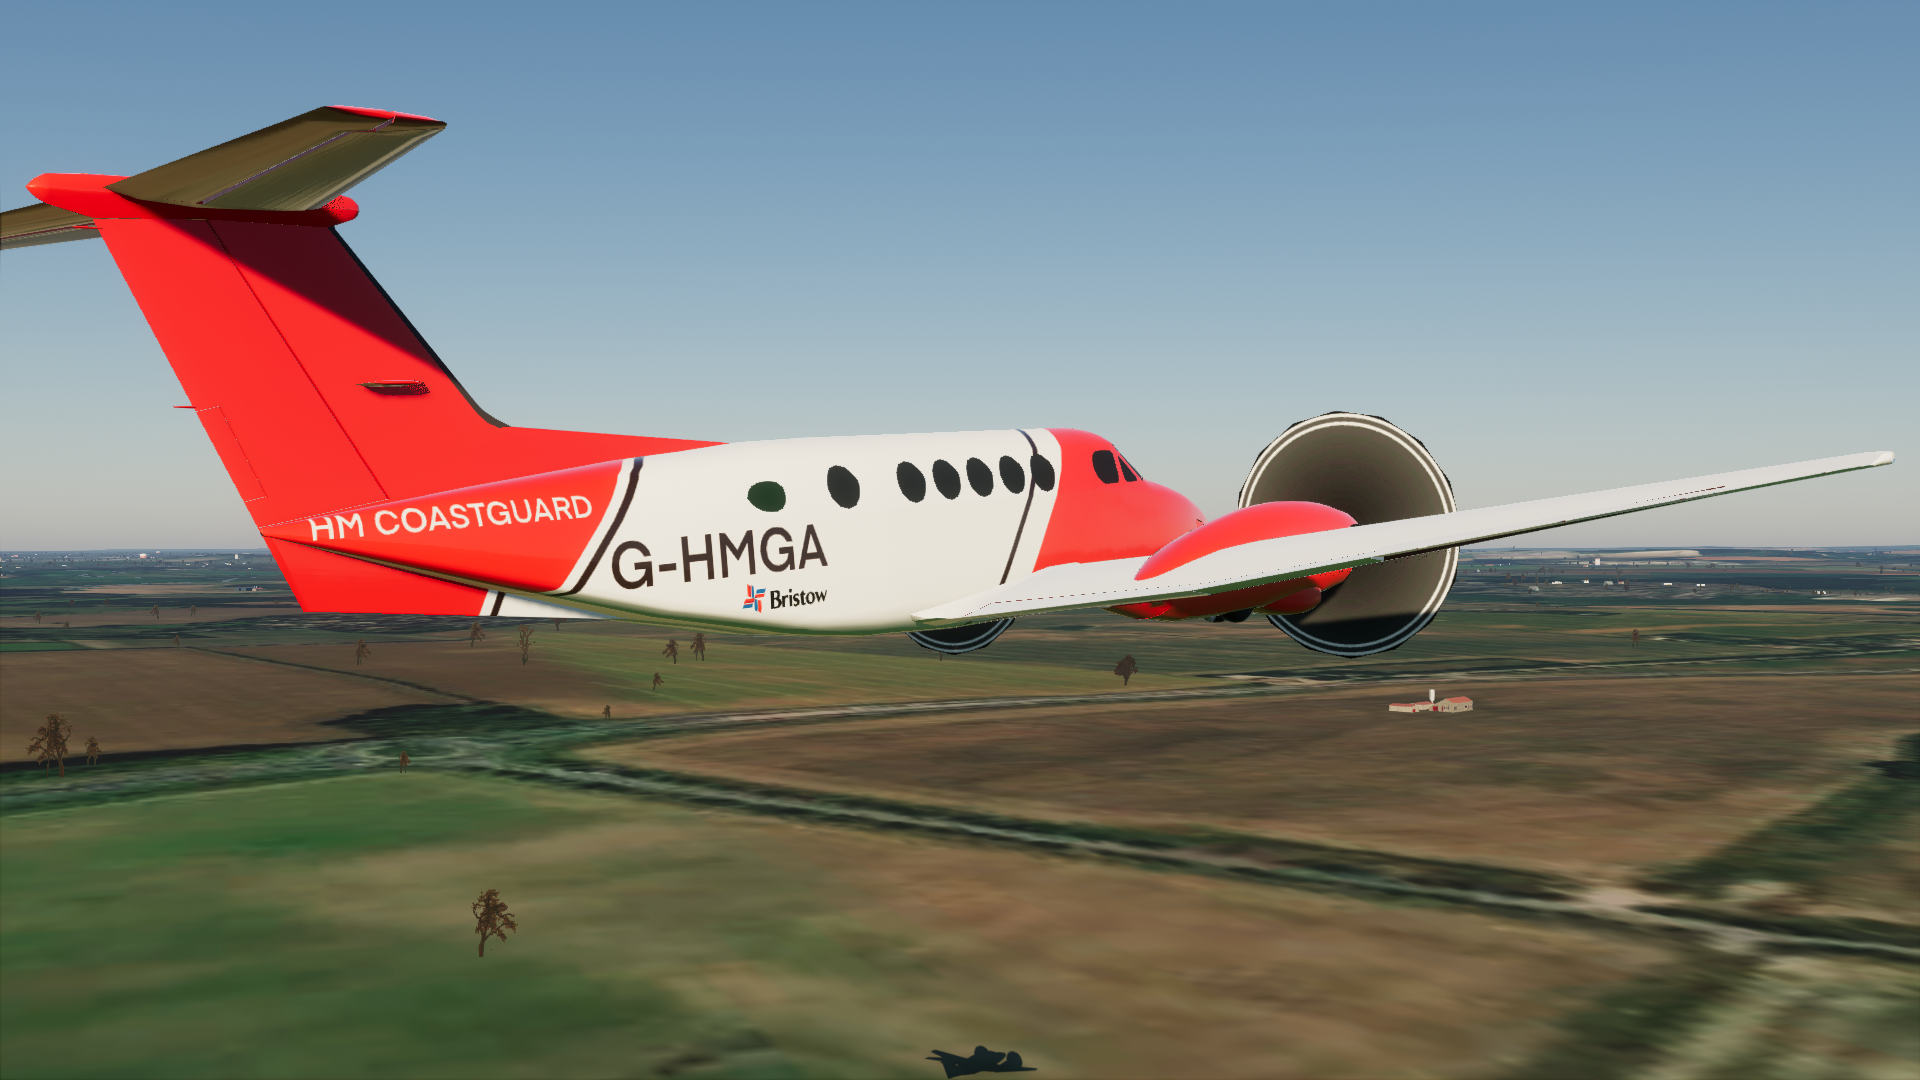 HMCG King Air B200